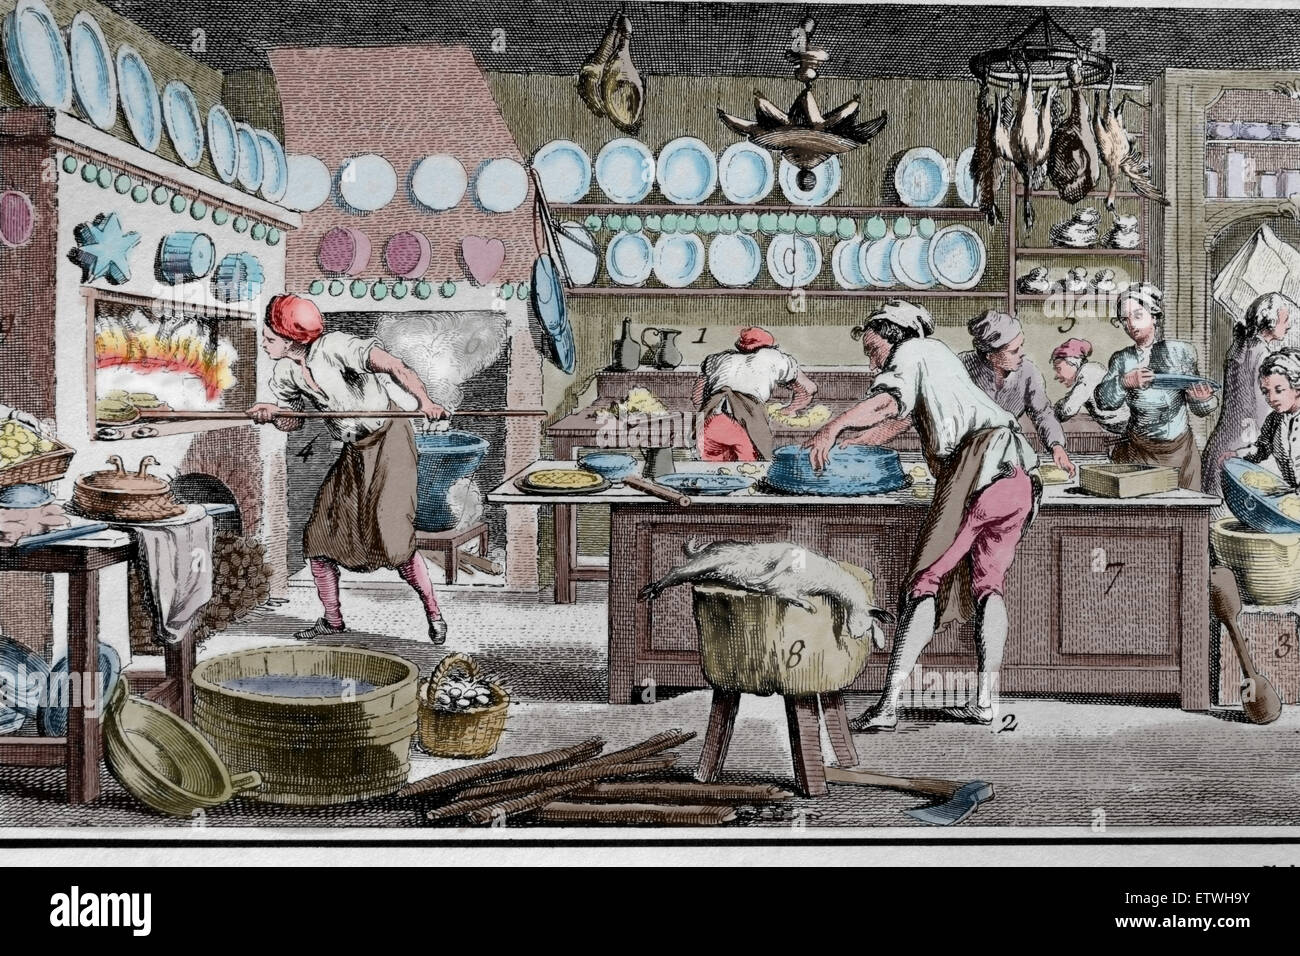 Illustrazione. La piastra 450. La Patisserie. Encyclopedie. Curato da Denis Diderot e Jean le Rond d'Alembert. Xviii c. Incisione. Foto Stock